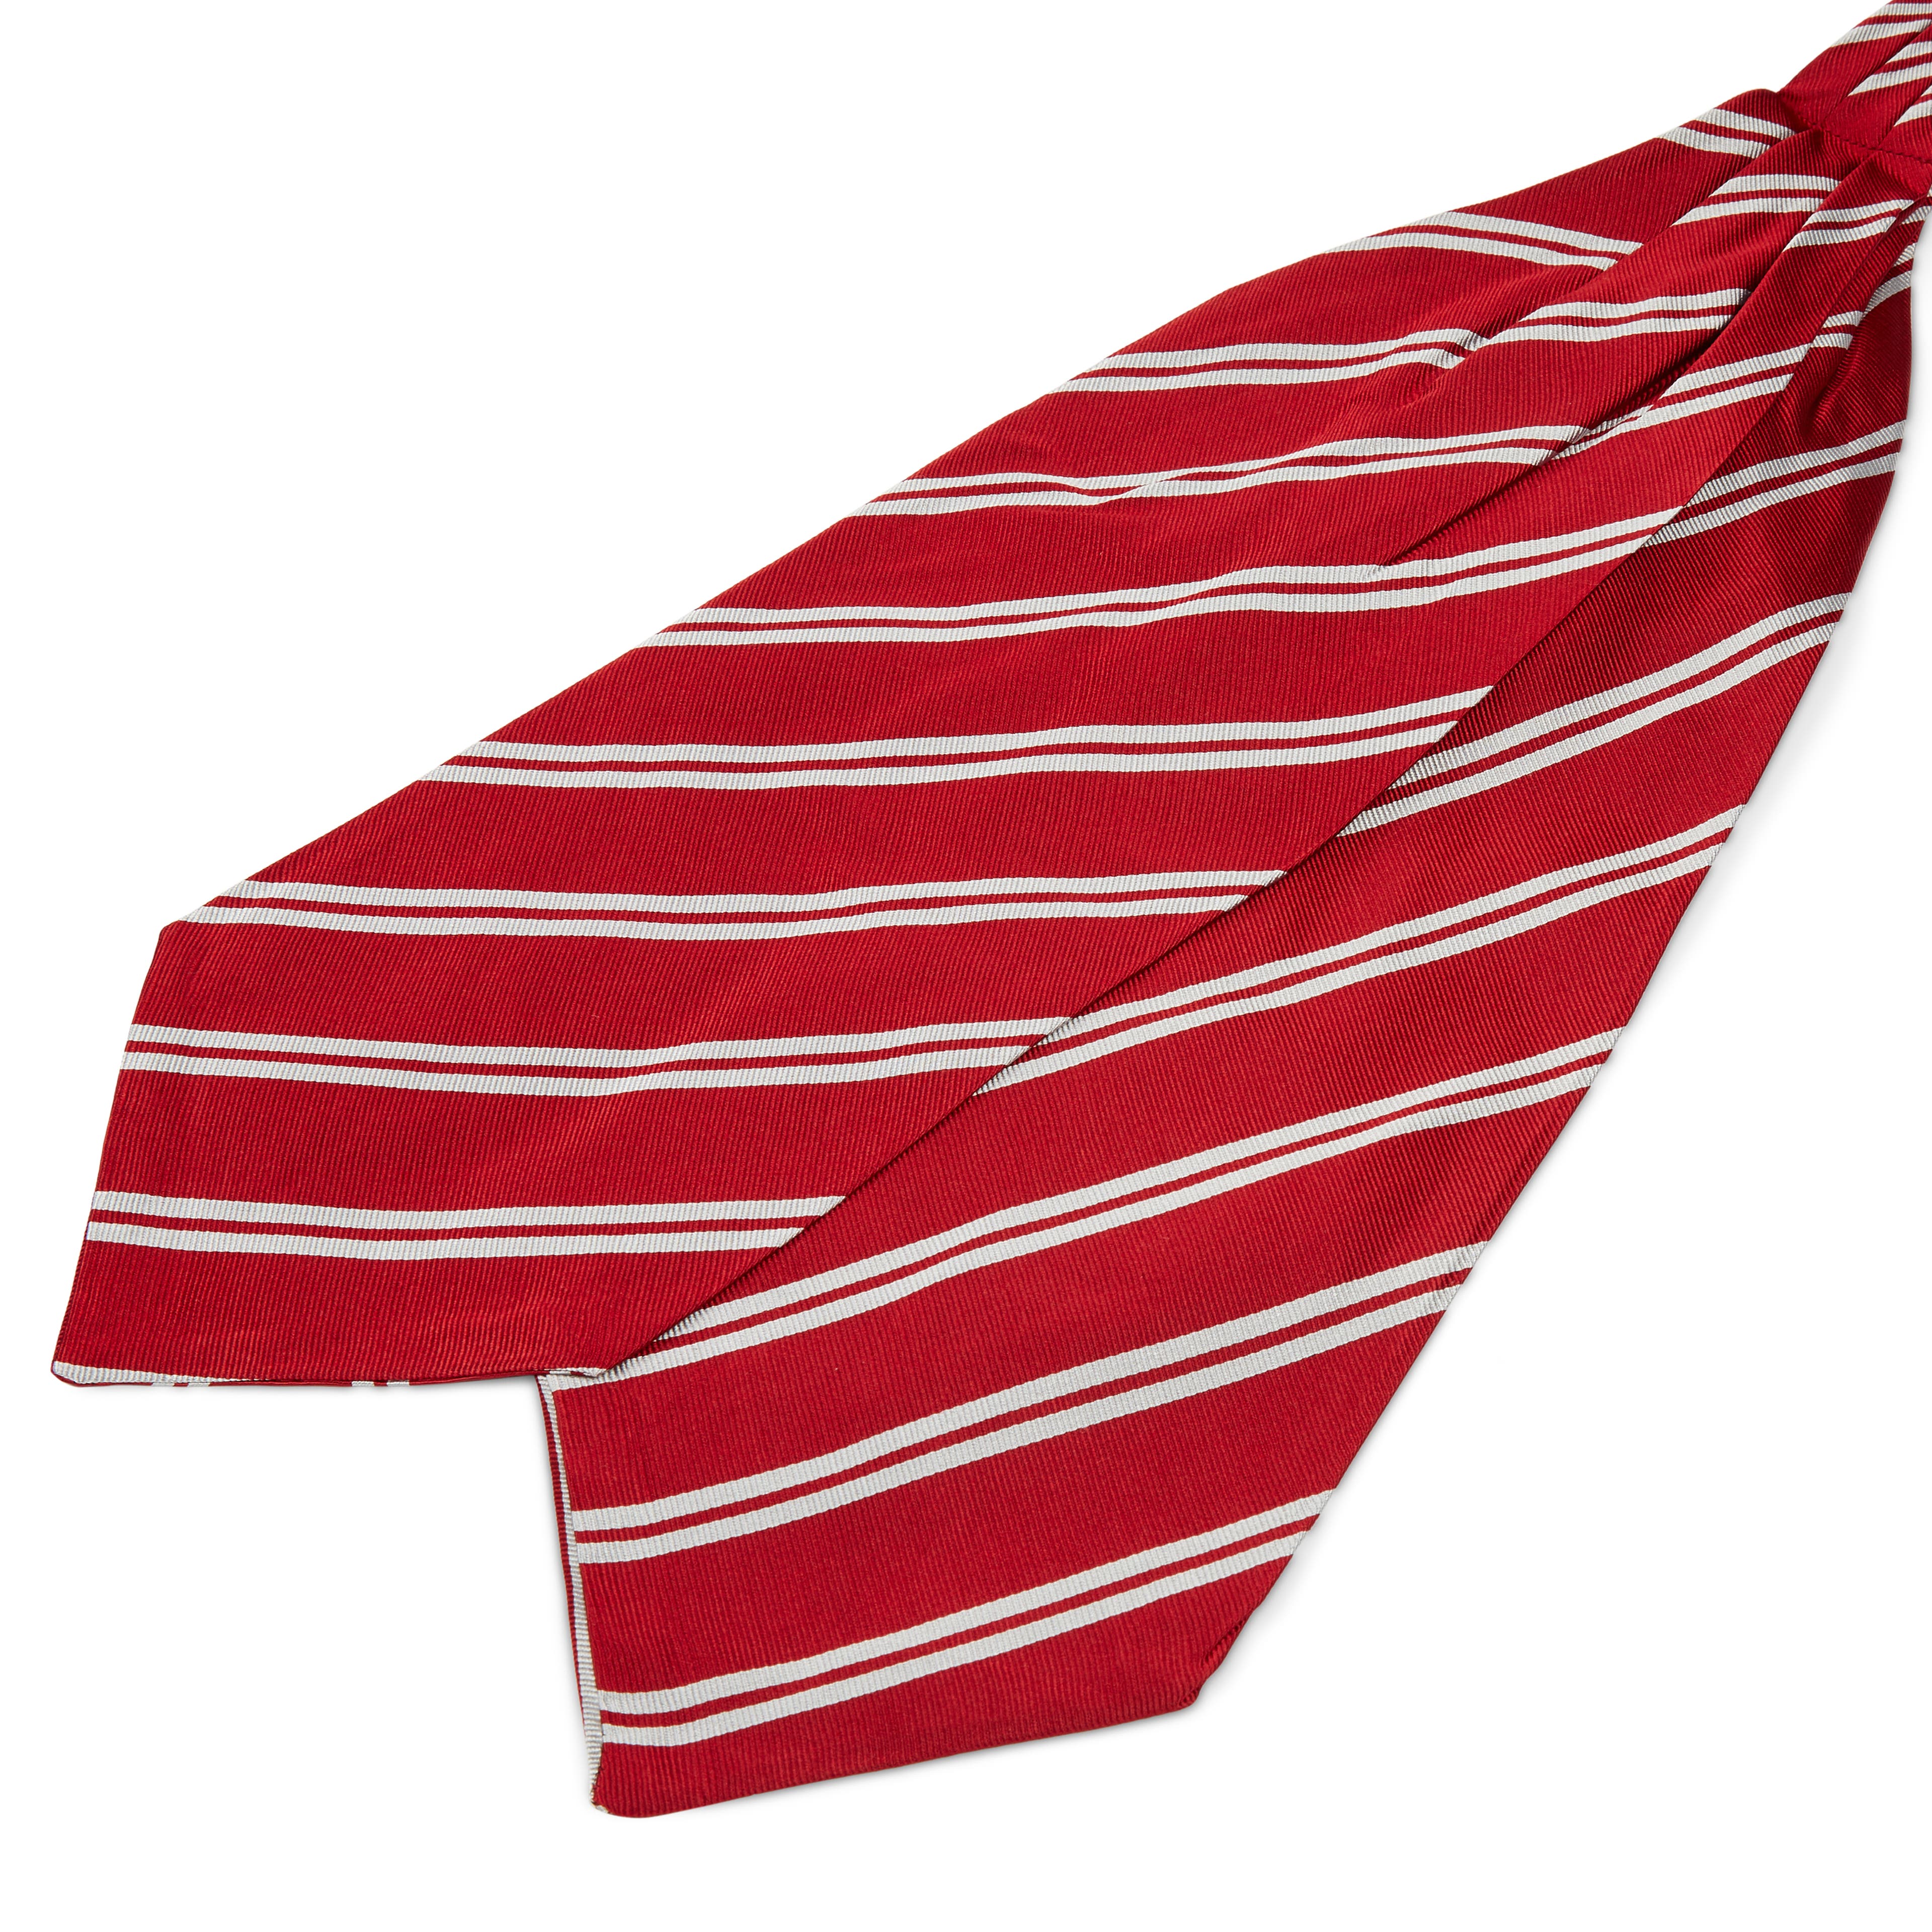 Cravatta ascot in seta rossa con doppie righe argentate